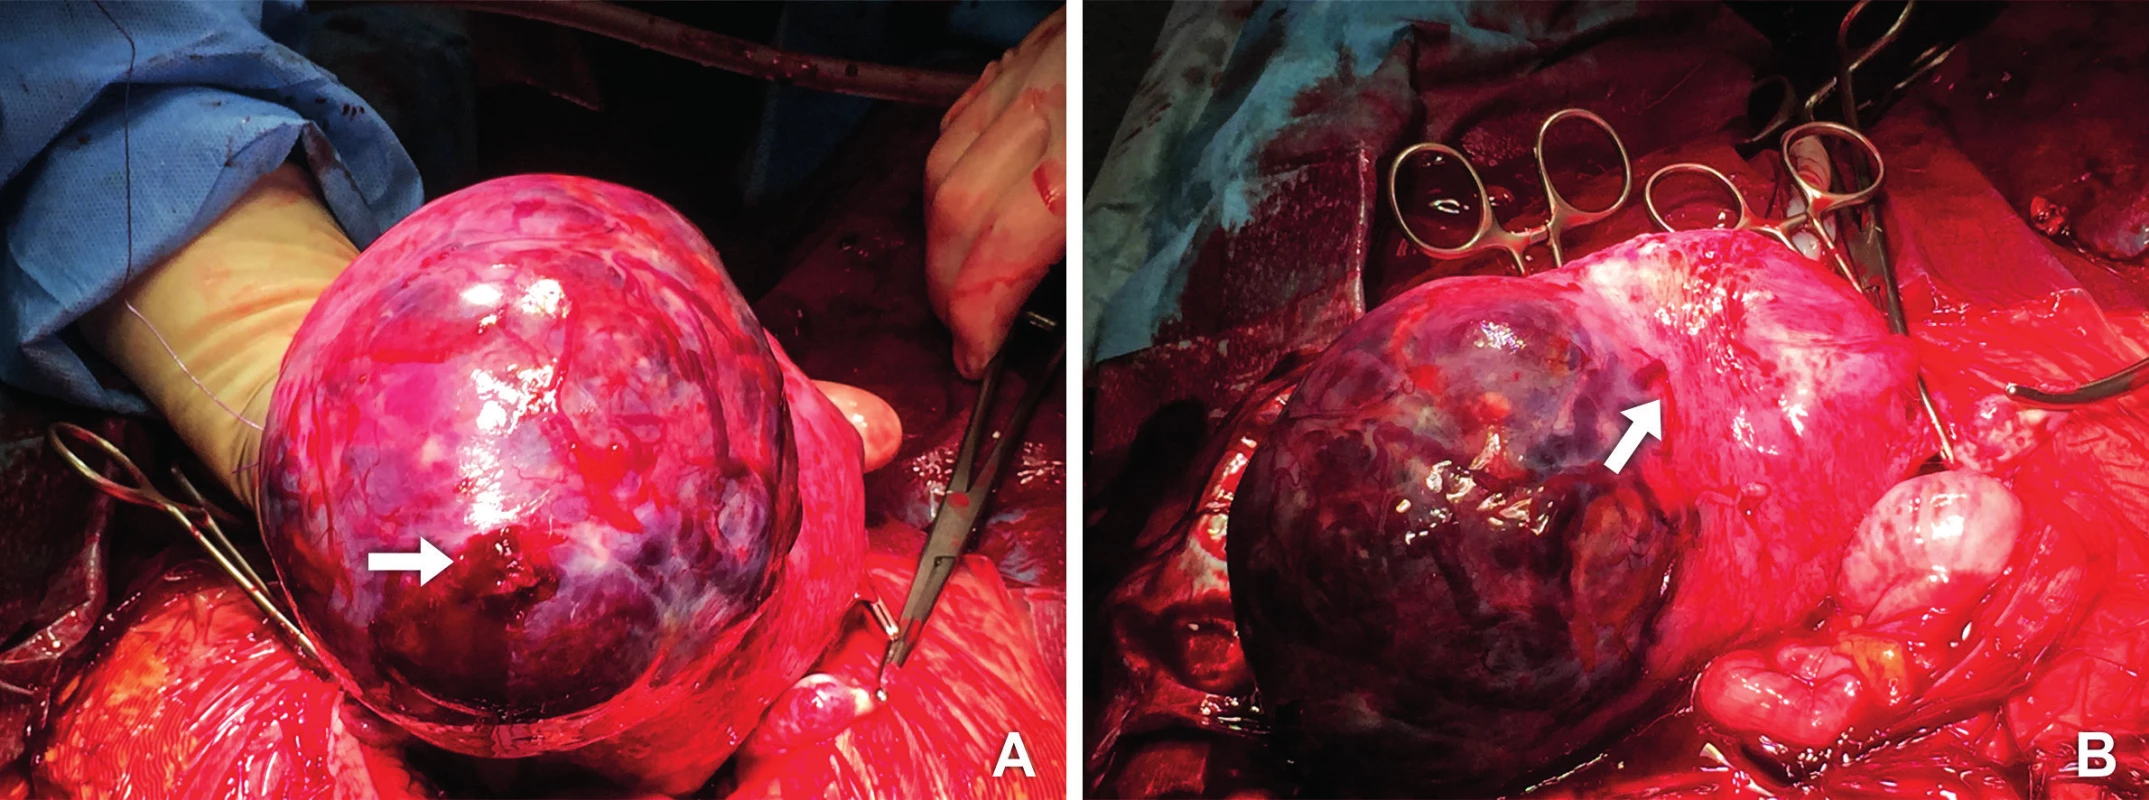 Operační nález
A. Placenta percreta prorůstající z levého děložního rohu (šipka ukazuje zdroj krvácení)
B. Plošně adherující placenta, která na několika místech prorůstá děložní stěnou